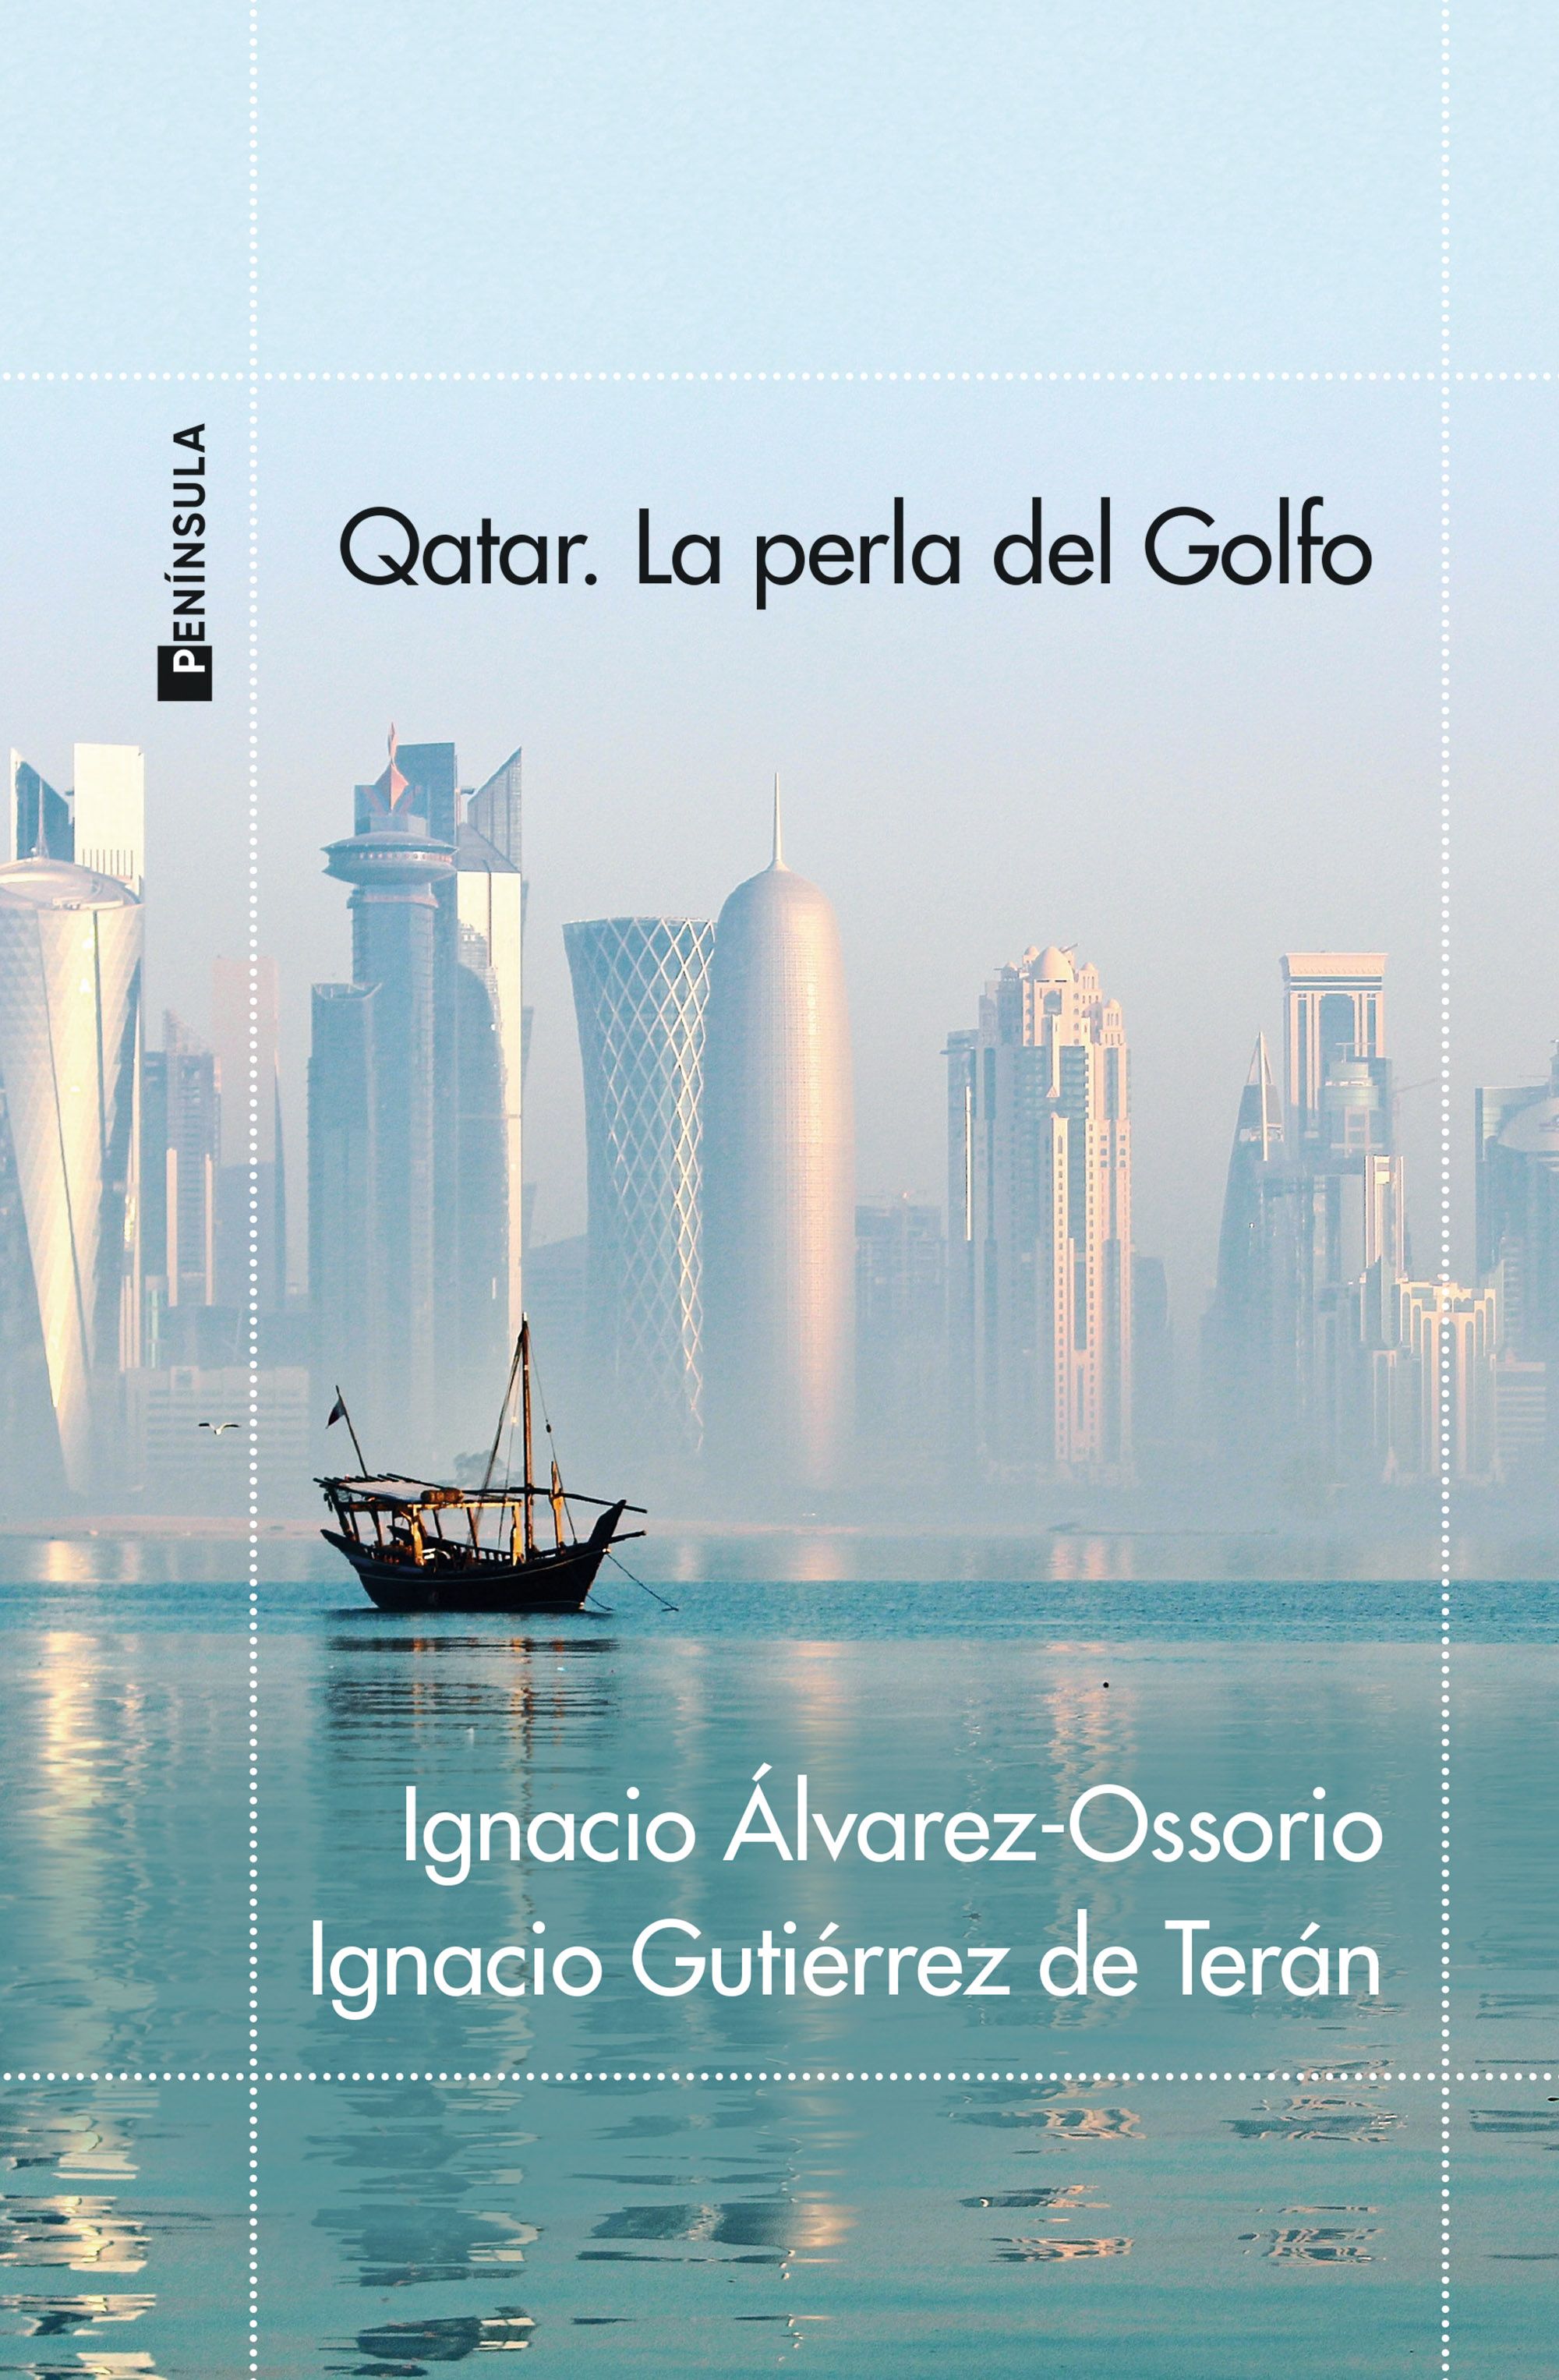 Imagen de portada del libro Qatar, la perla del Golfo